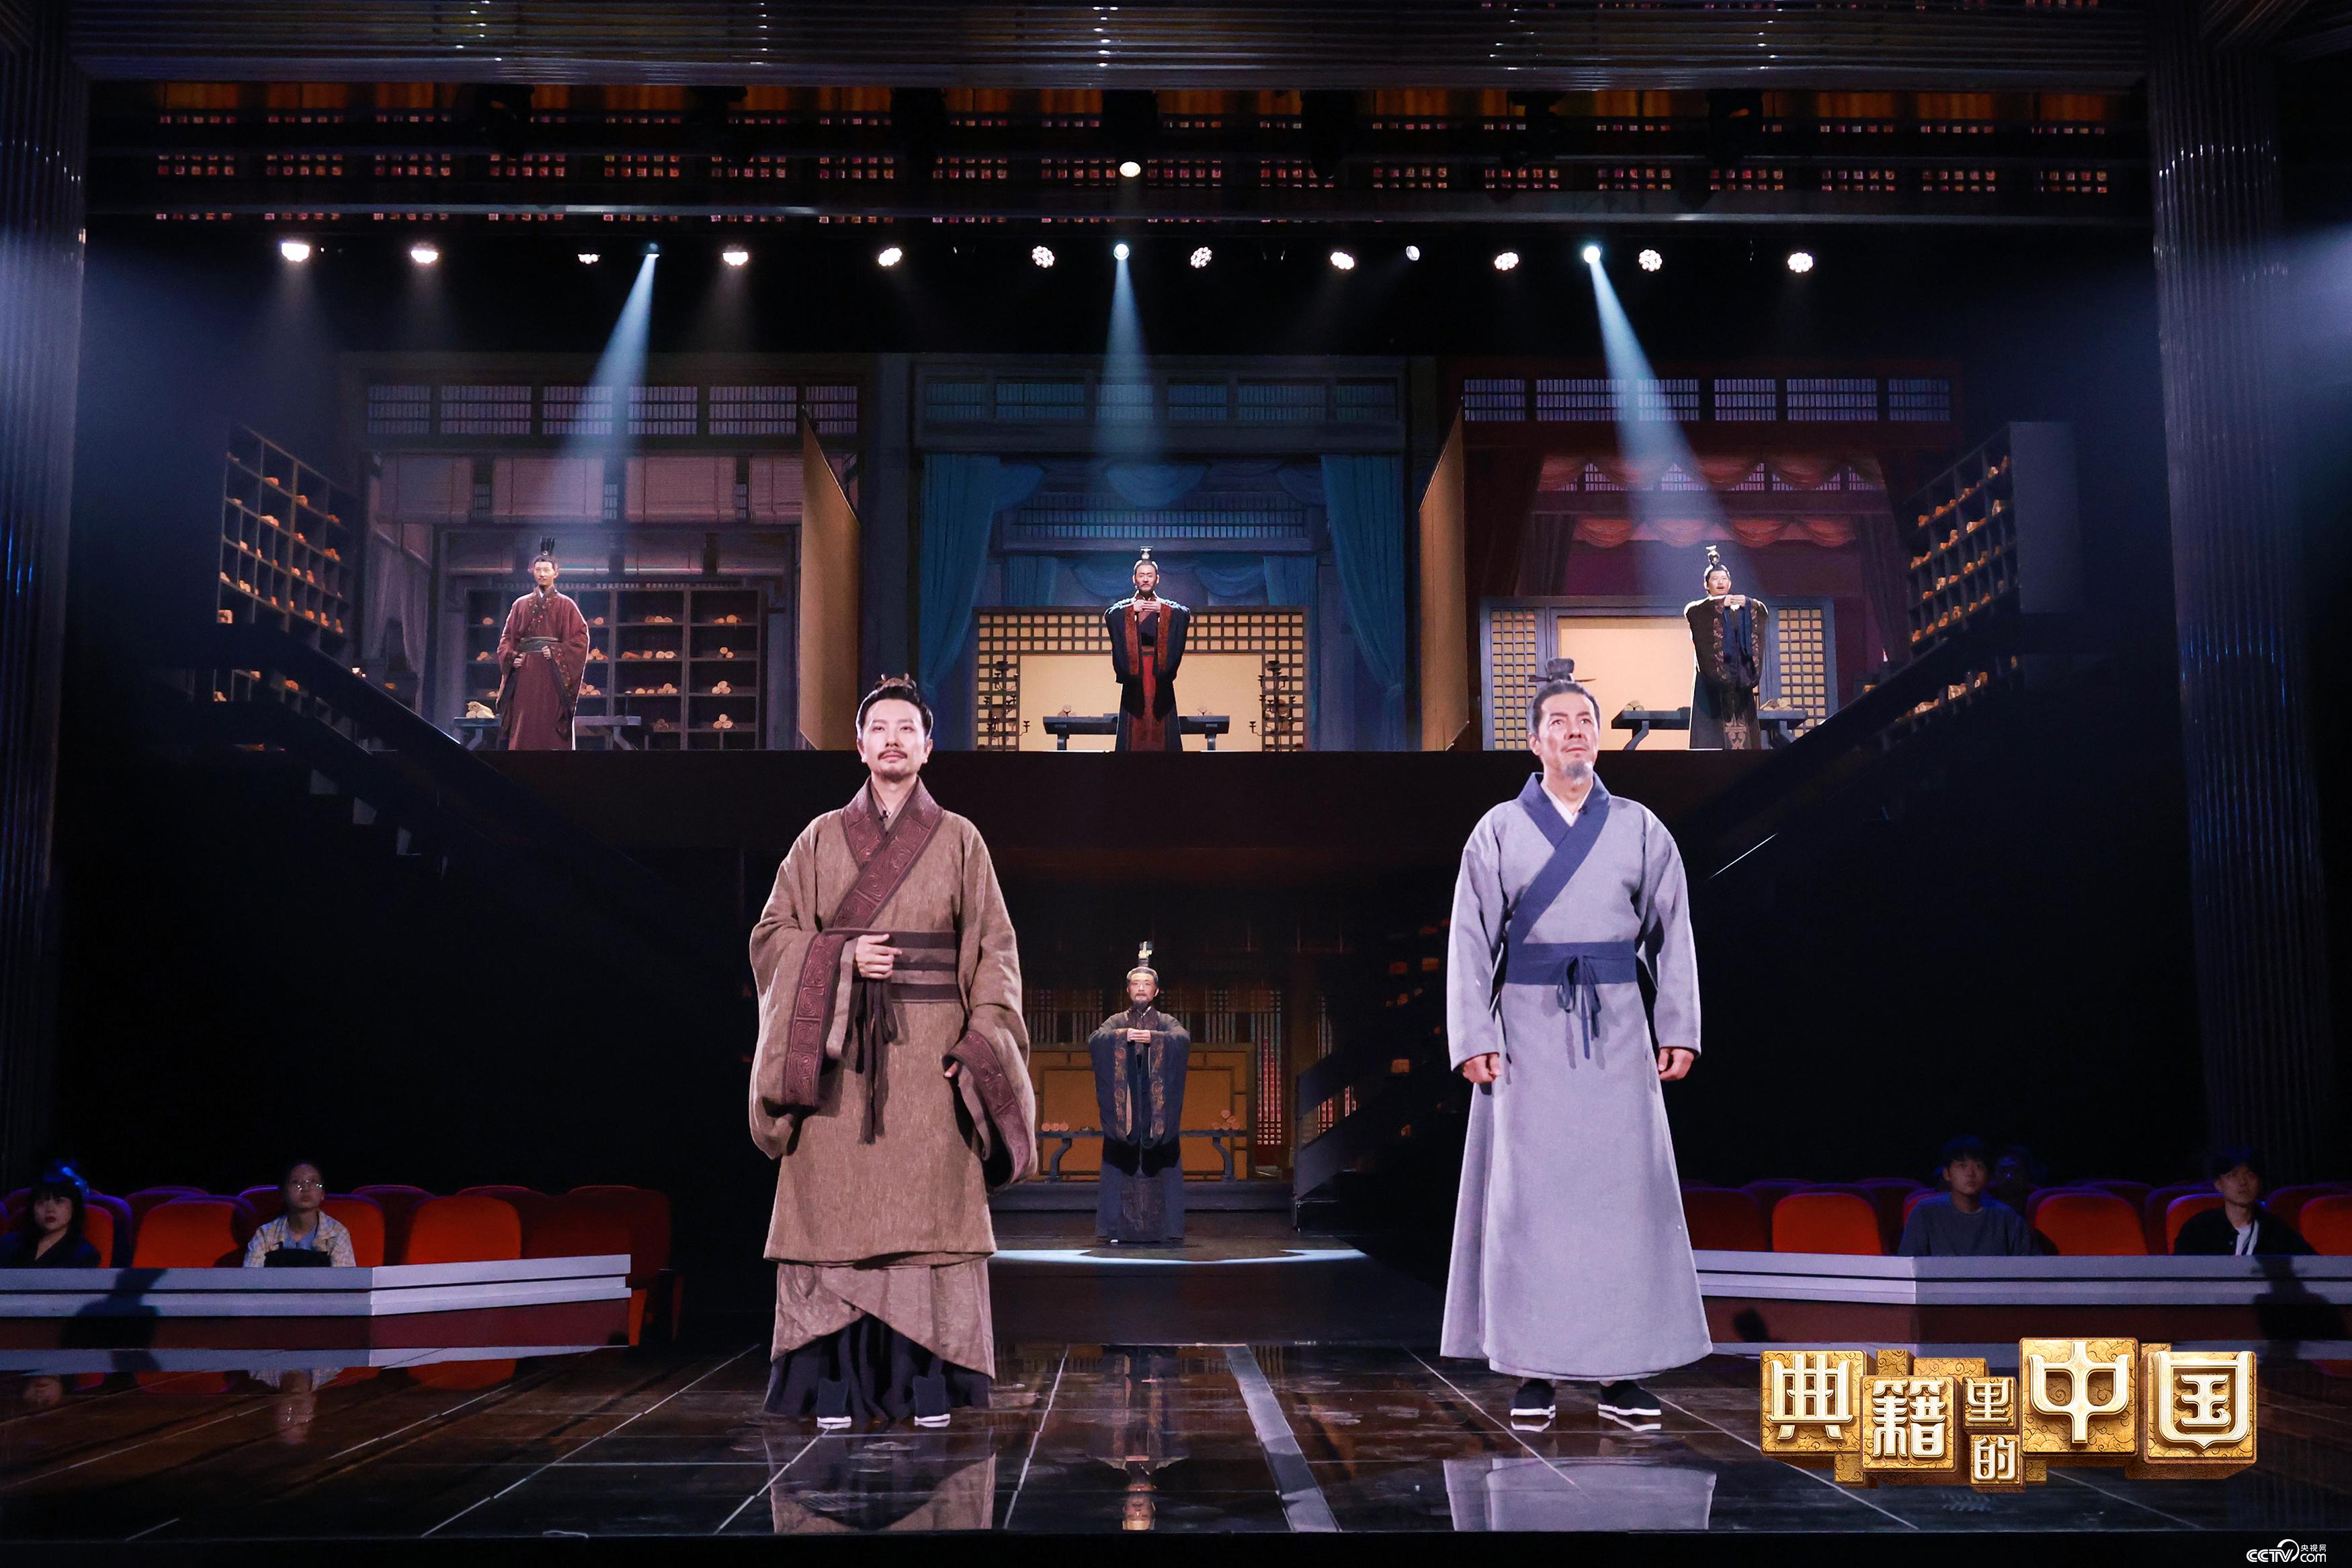 撒贝宁跨时空对话明代学者杨慎 《典籍里的中国2》越王勾践上演“绝地反击”